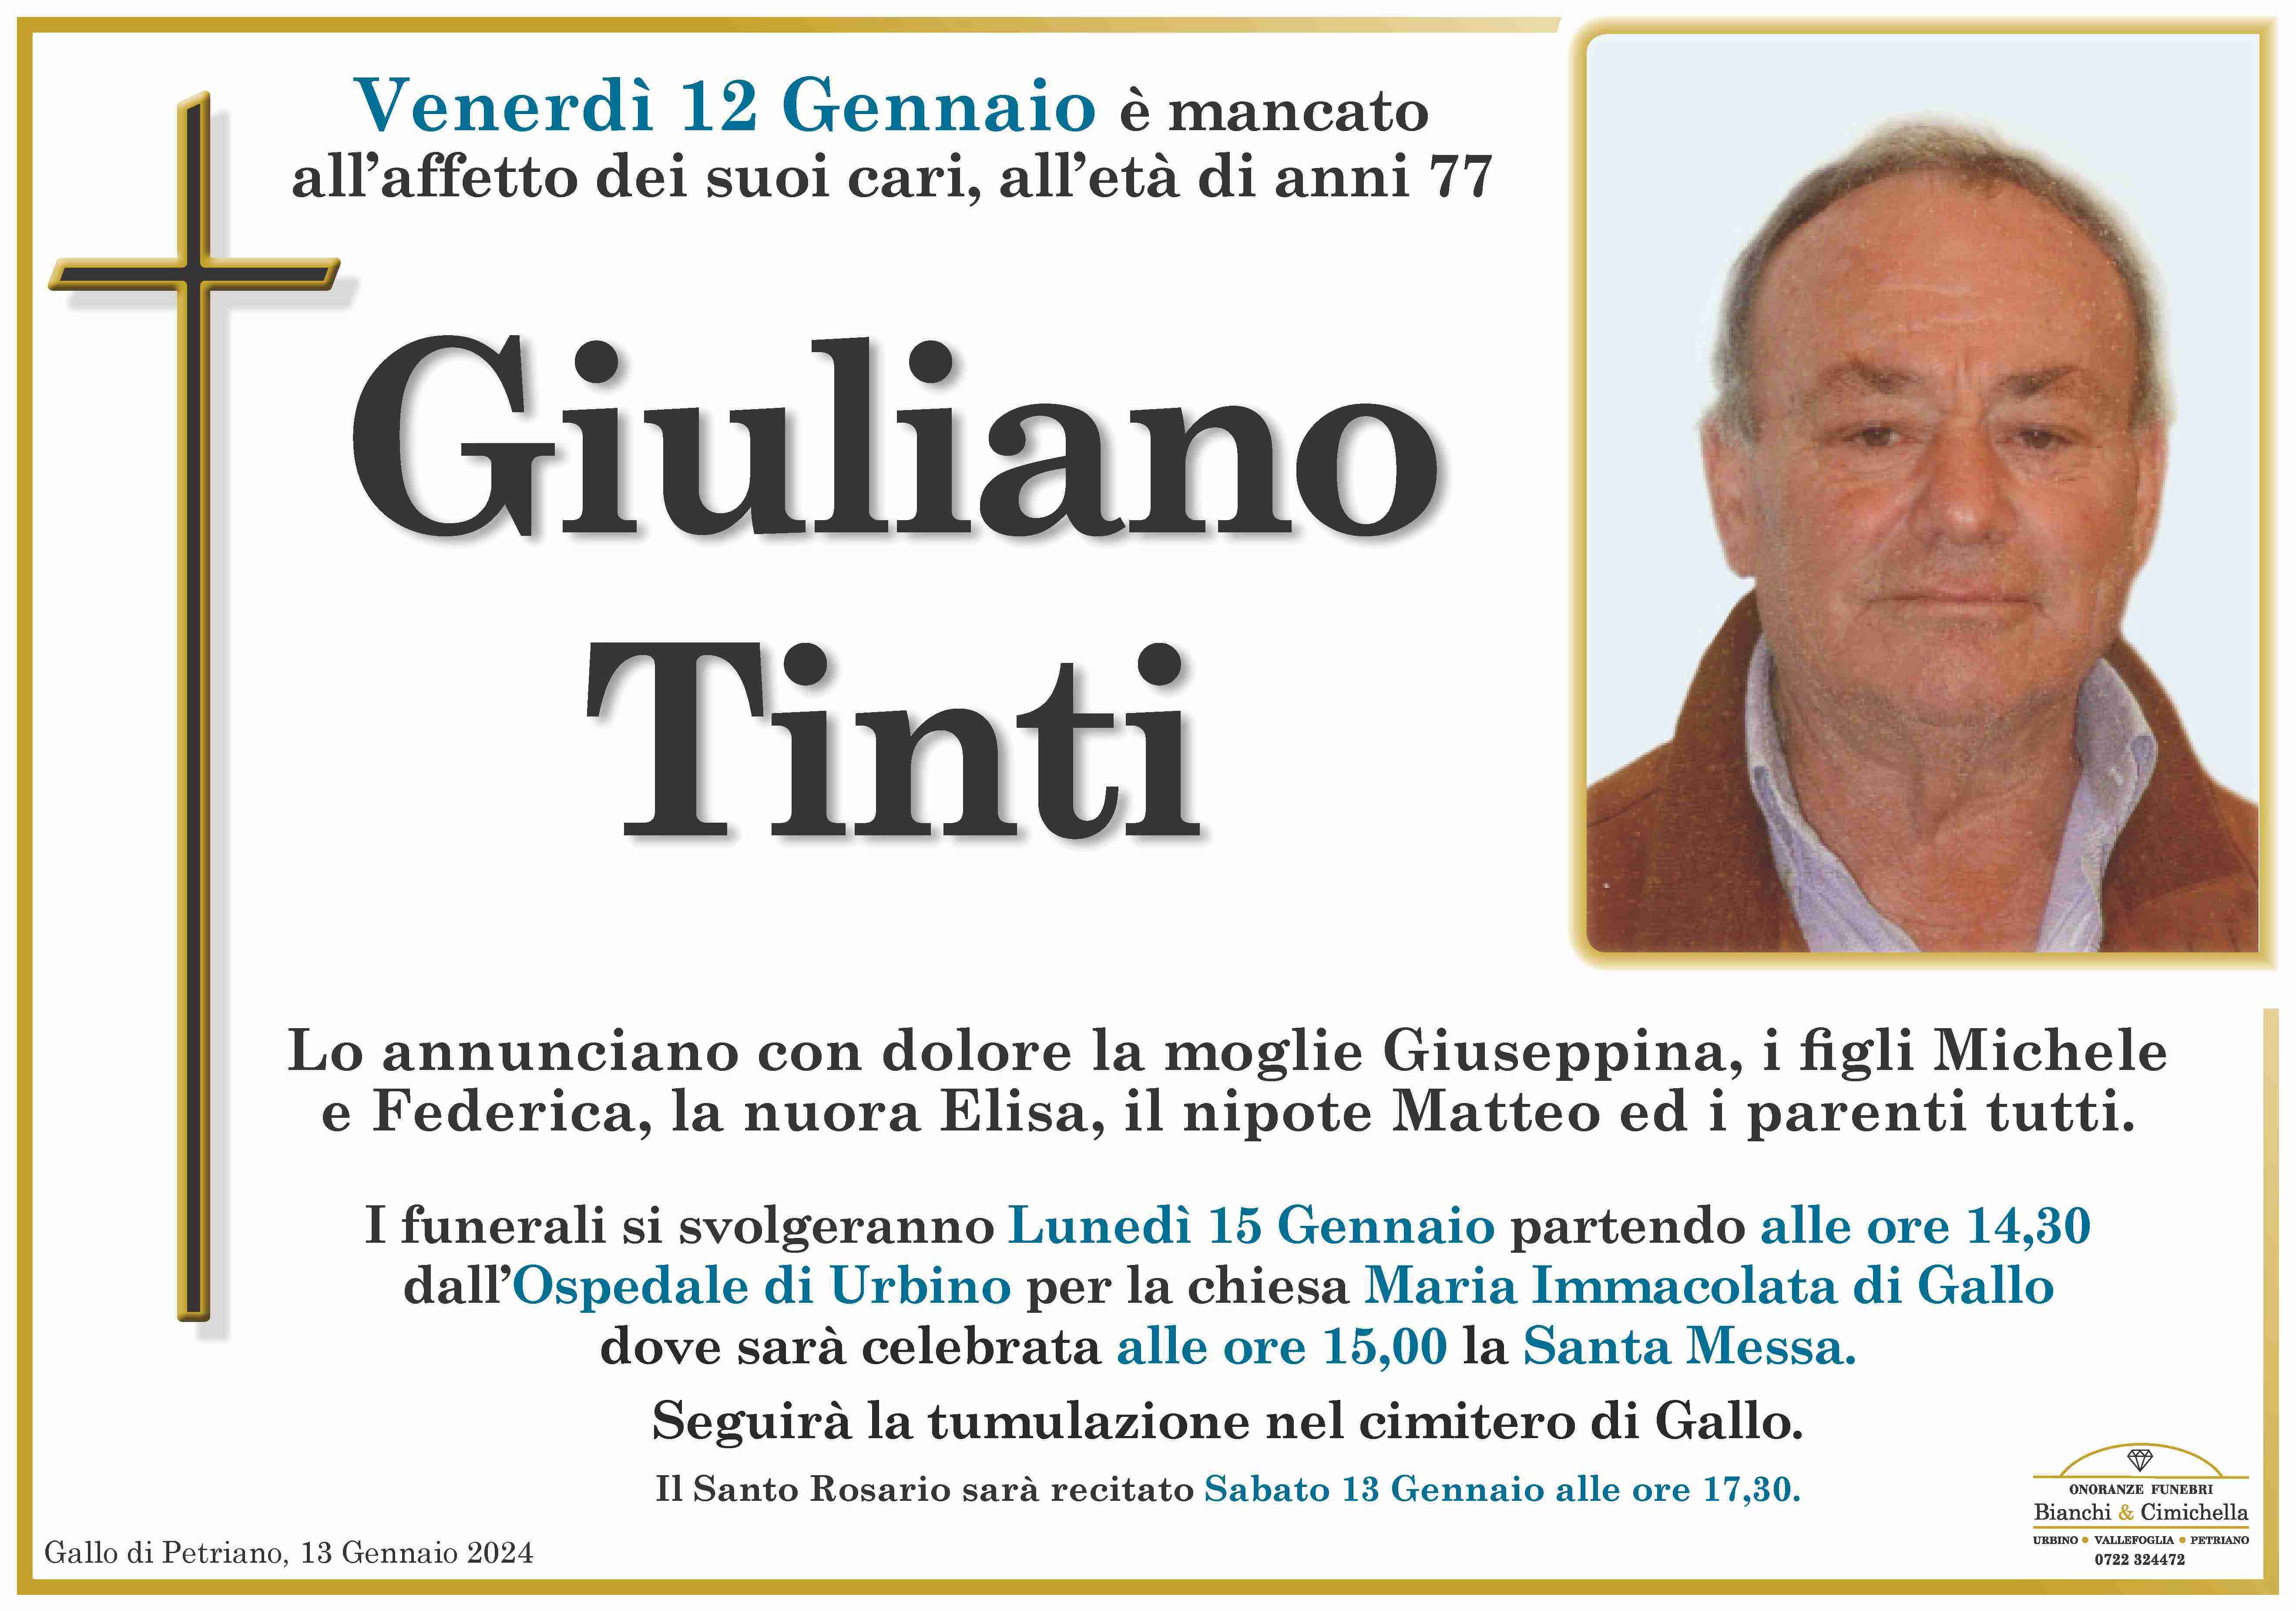 Giuliano Tinti